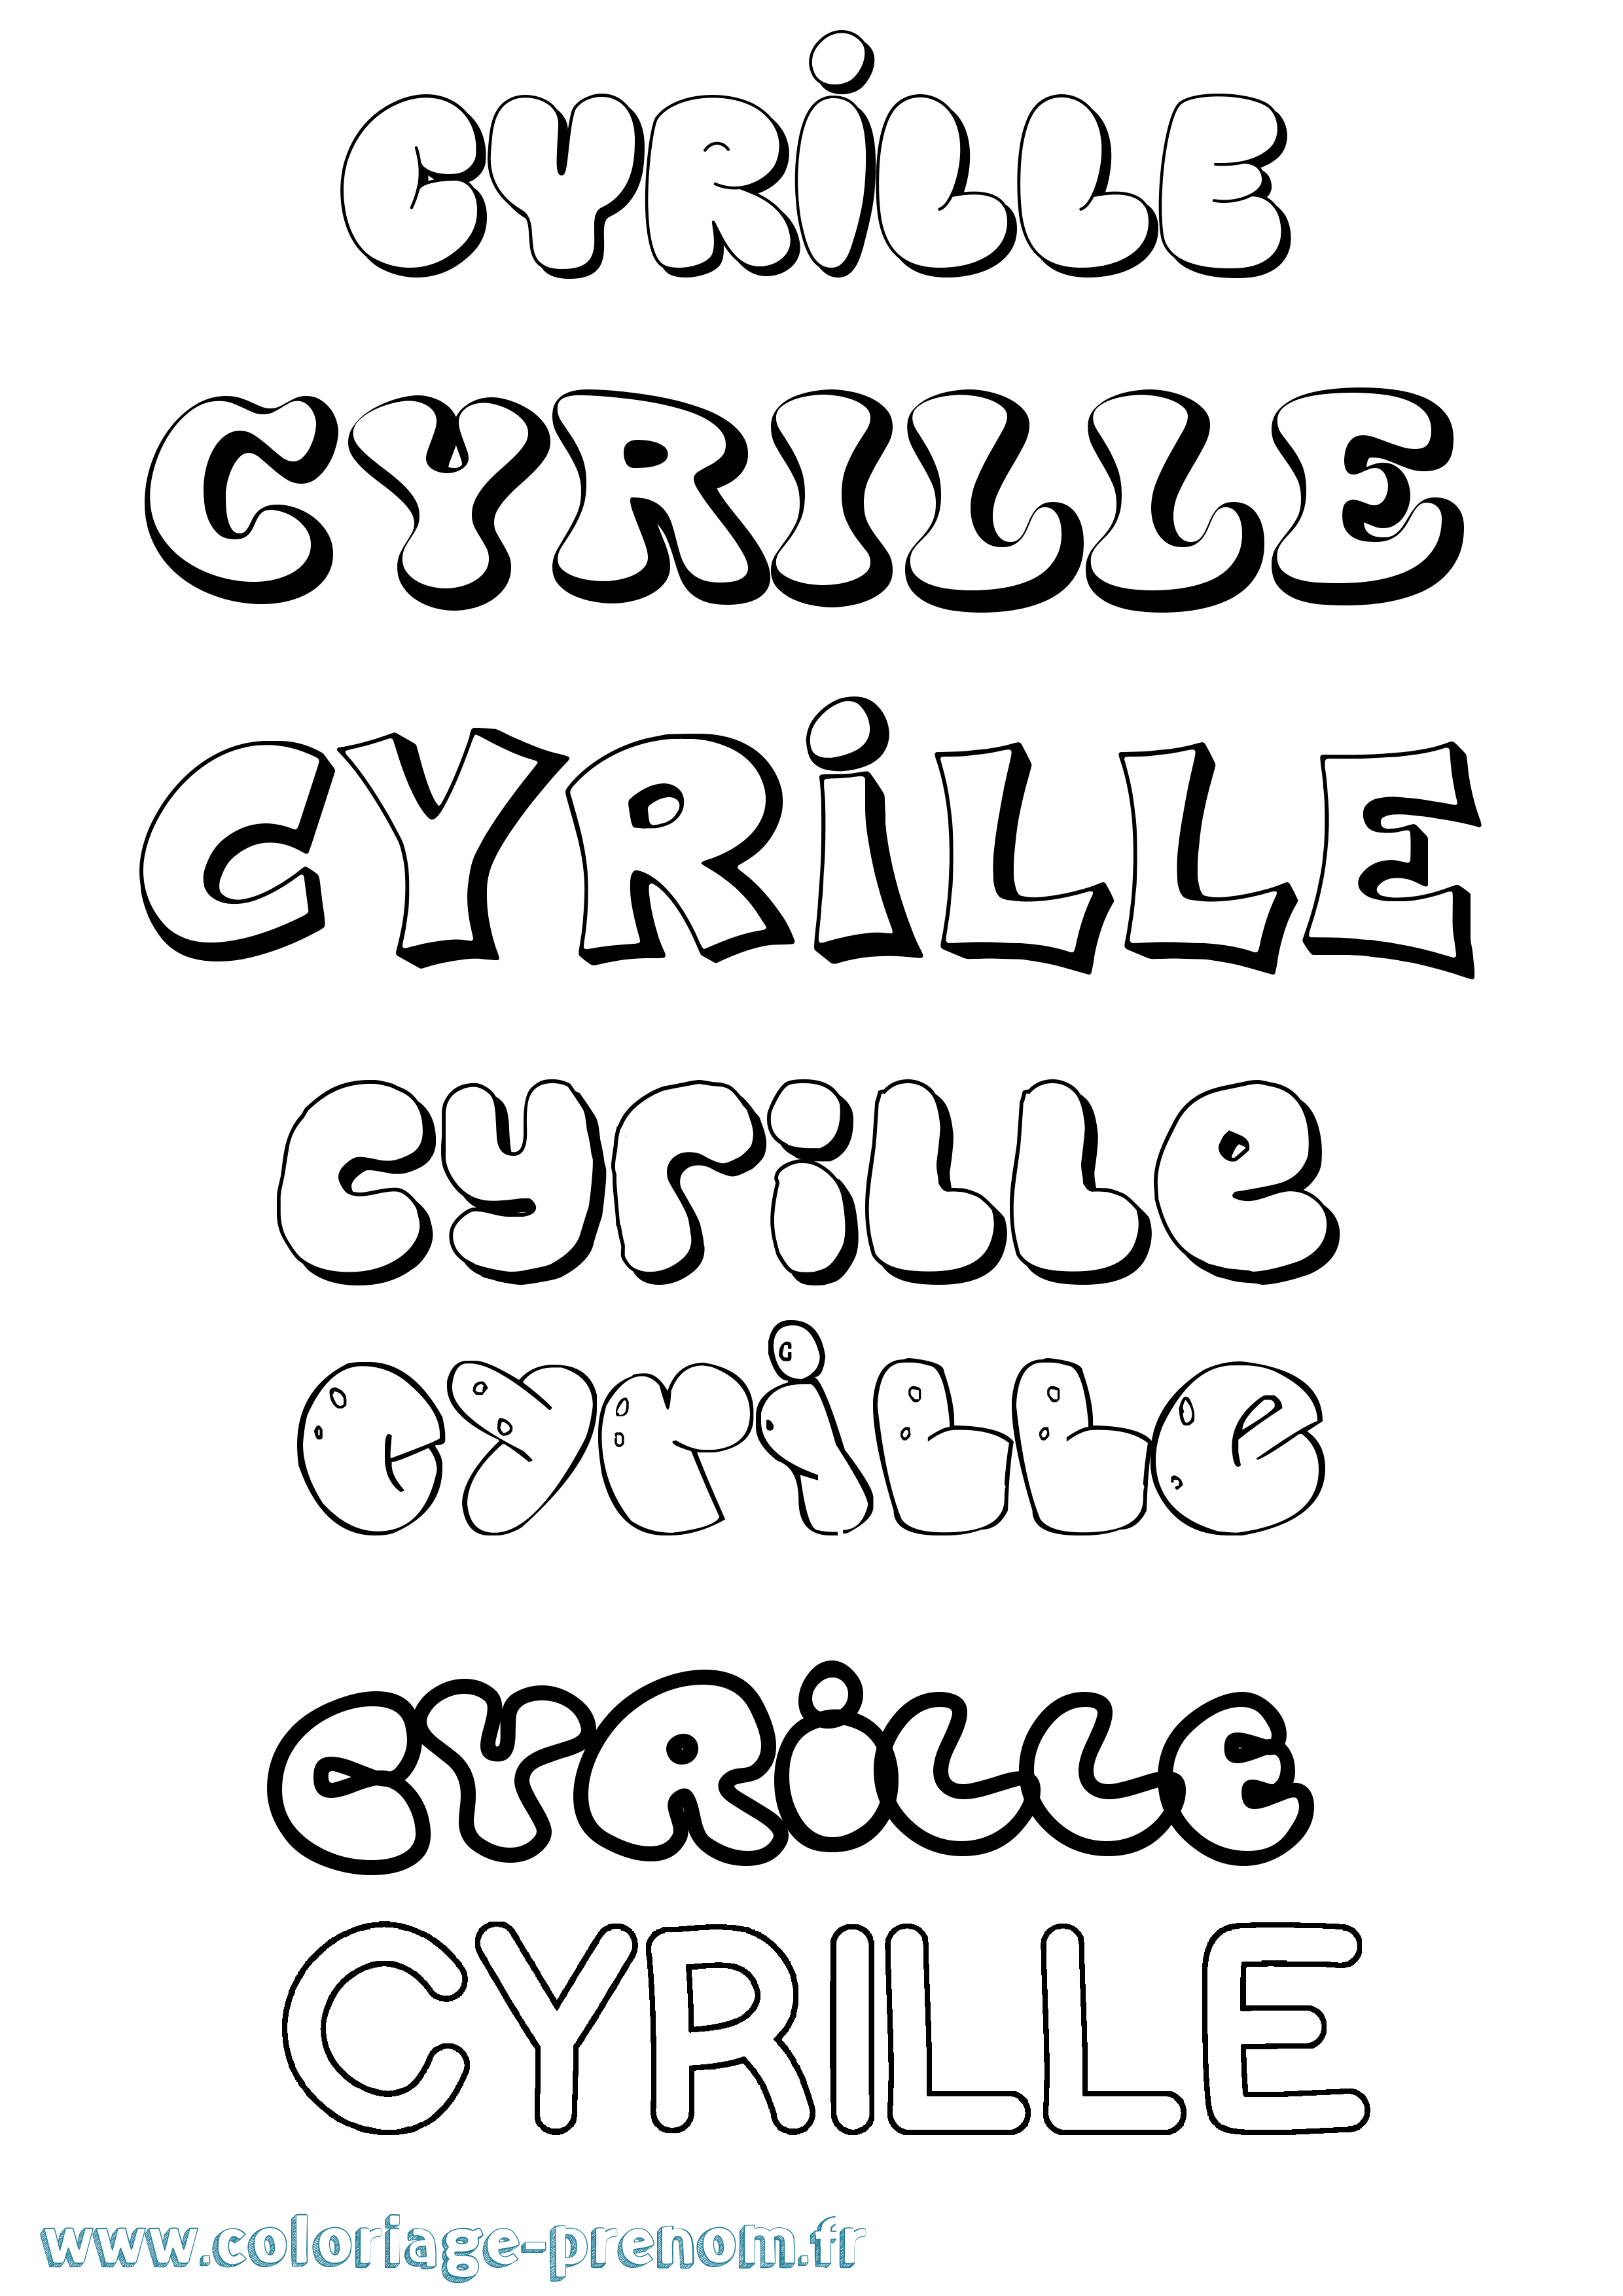 Coloriage prénom Cyrille Bubble